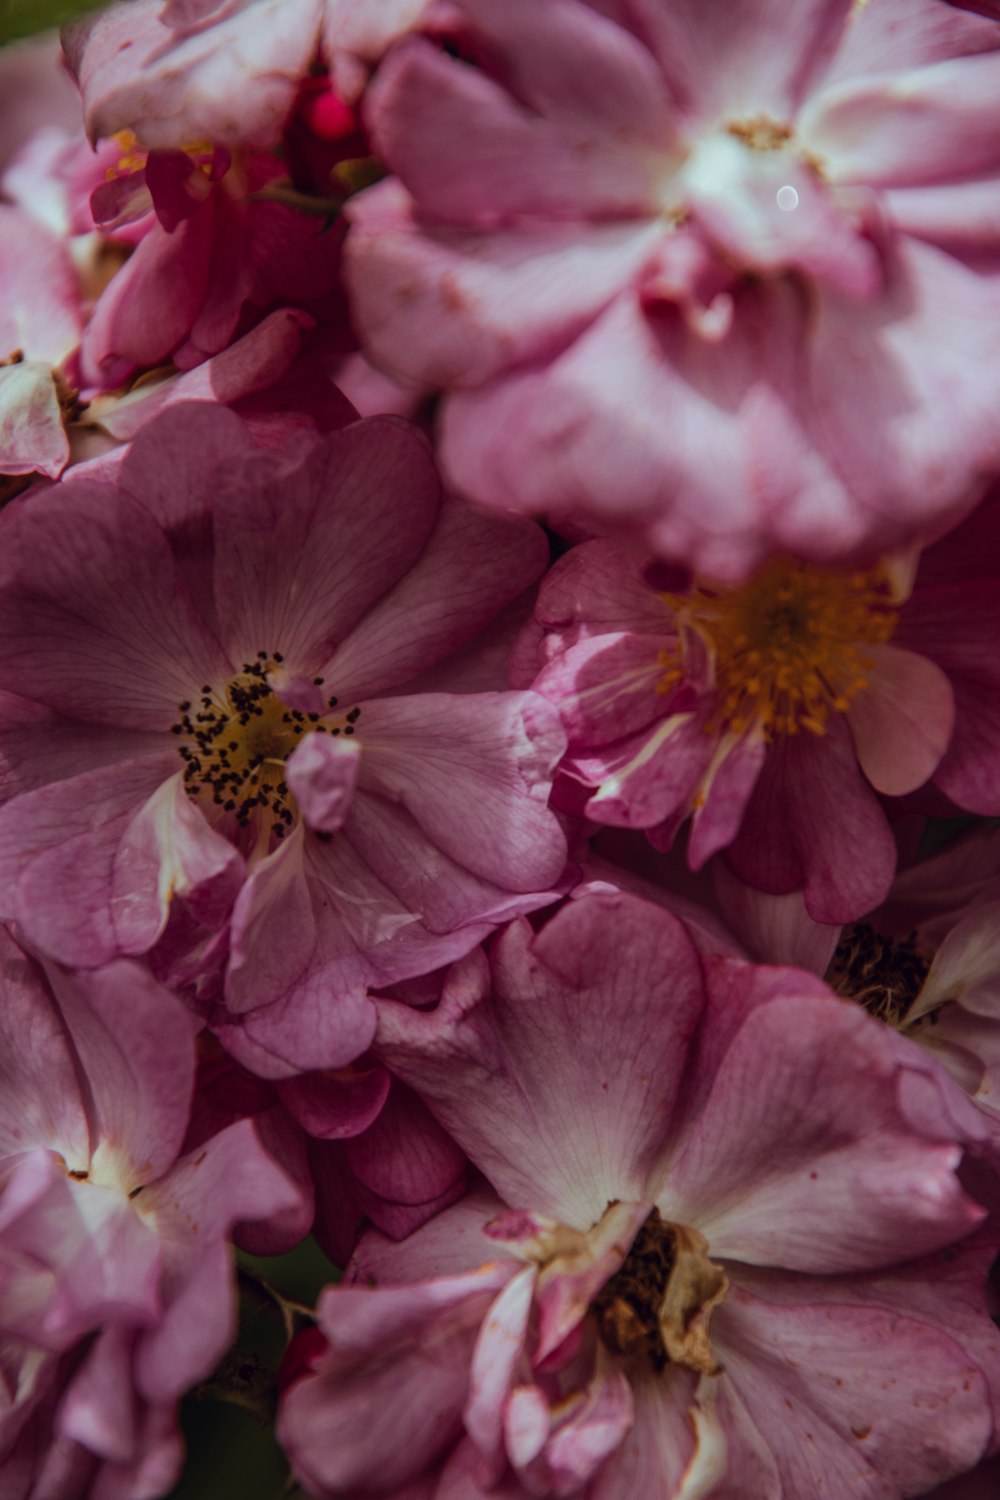 pinkk petaled flower lot